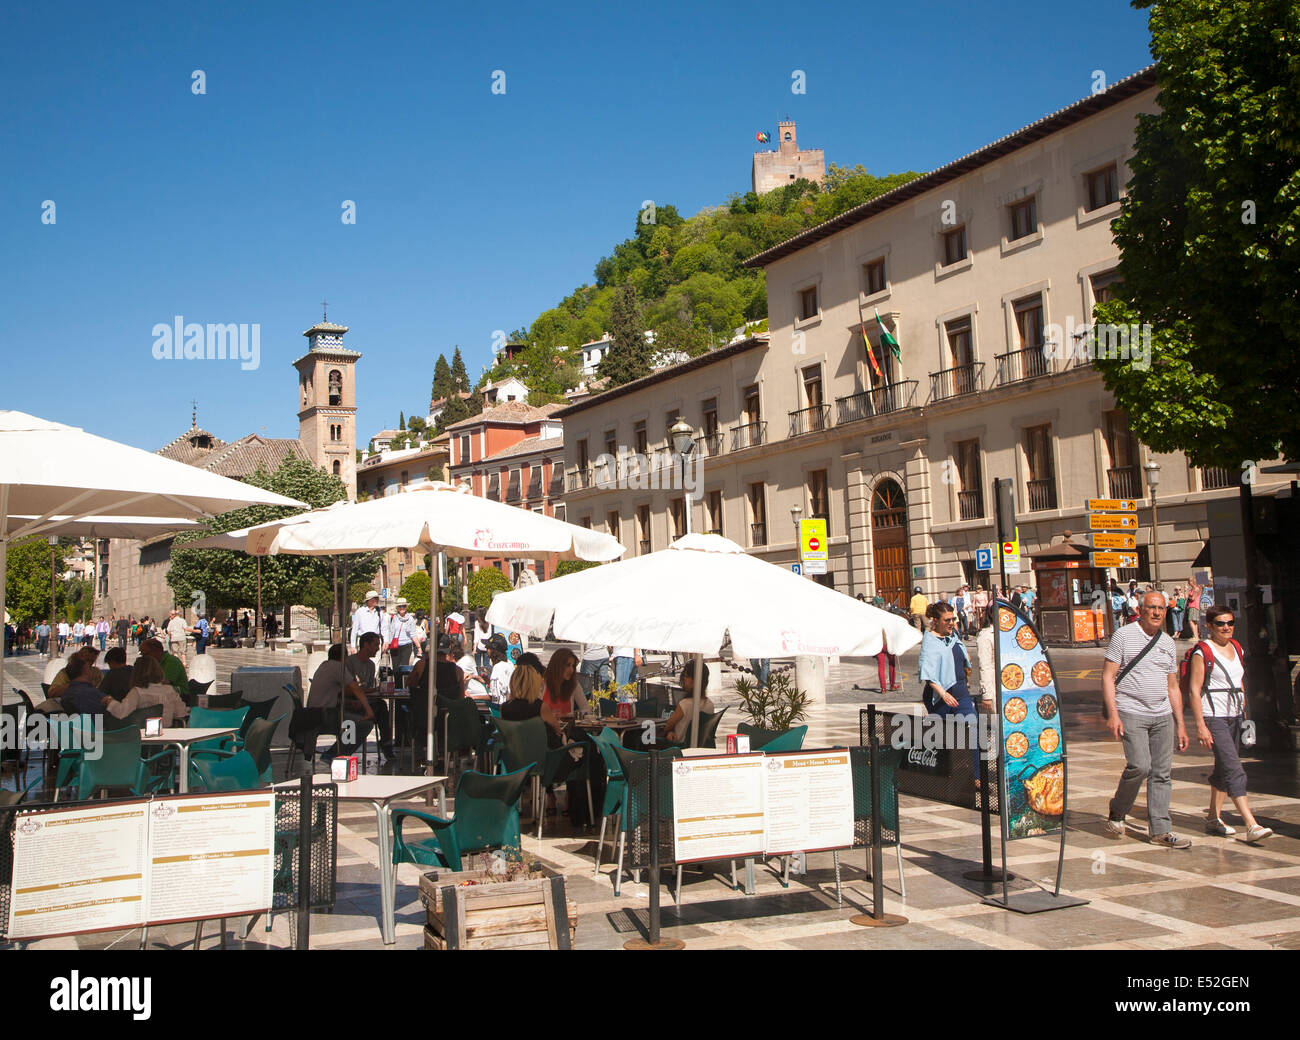 Personnes dans un café touristique sur la Plaza Nueva, Granada, Espagne Recherche jusqu'à la partie de l'Alhambra sur une colline. Banque D'Images